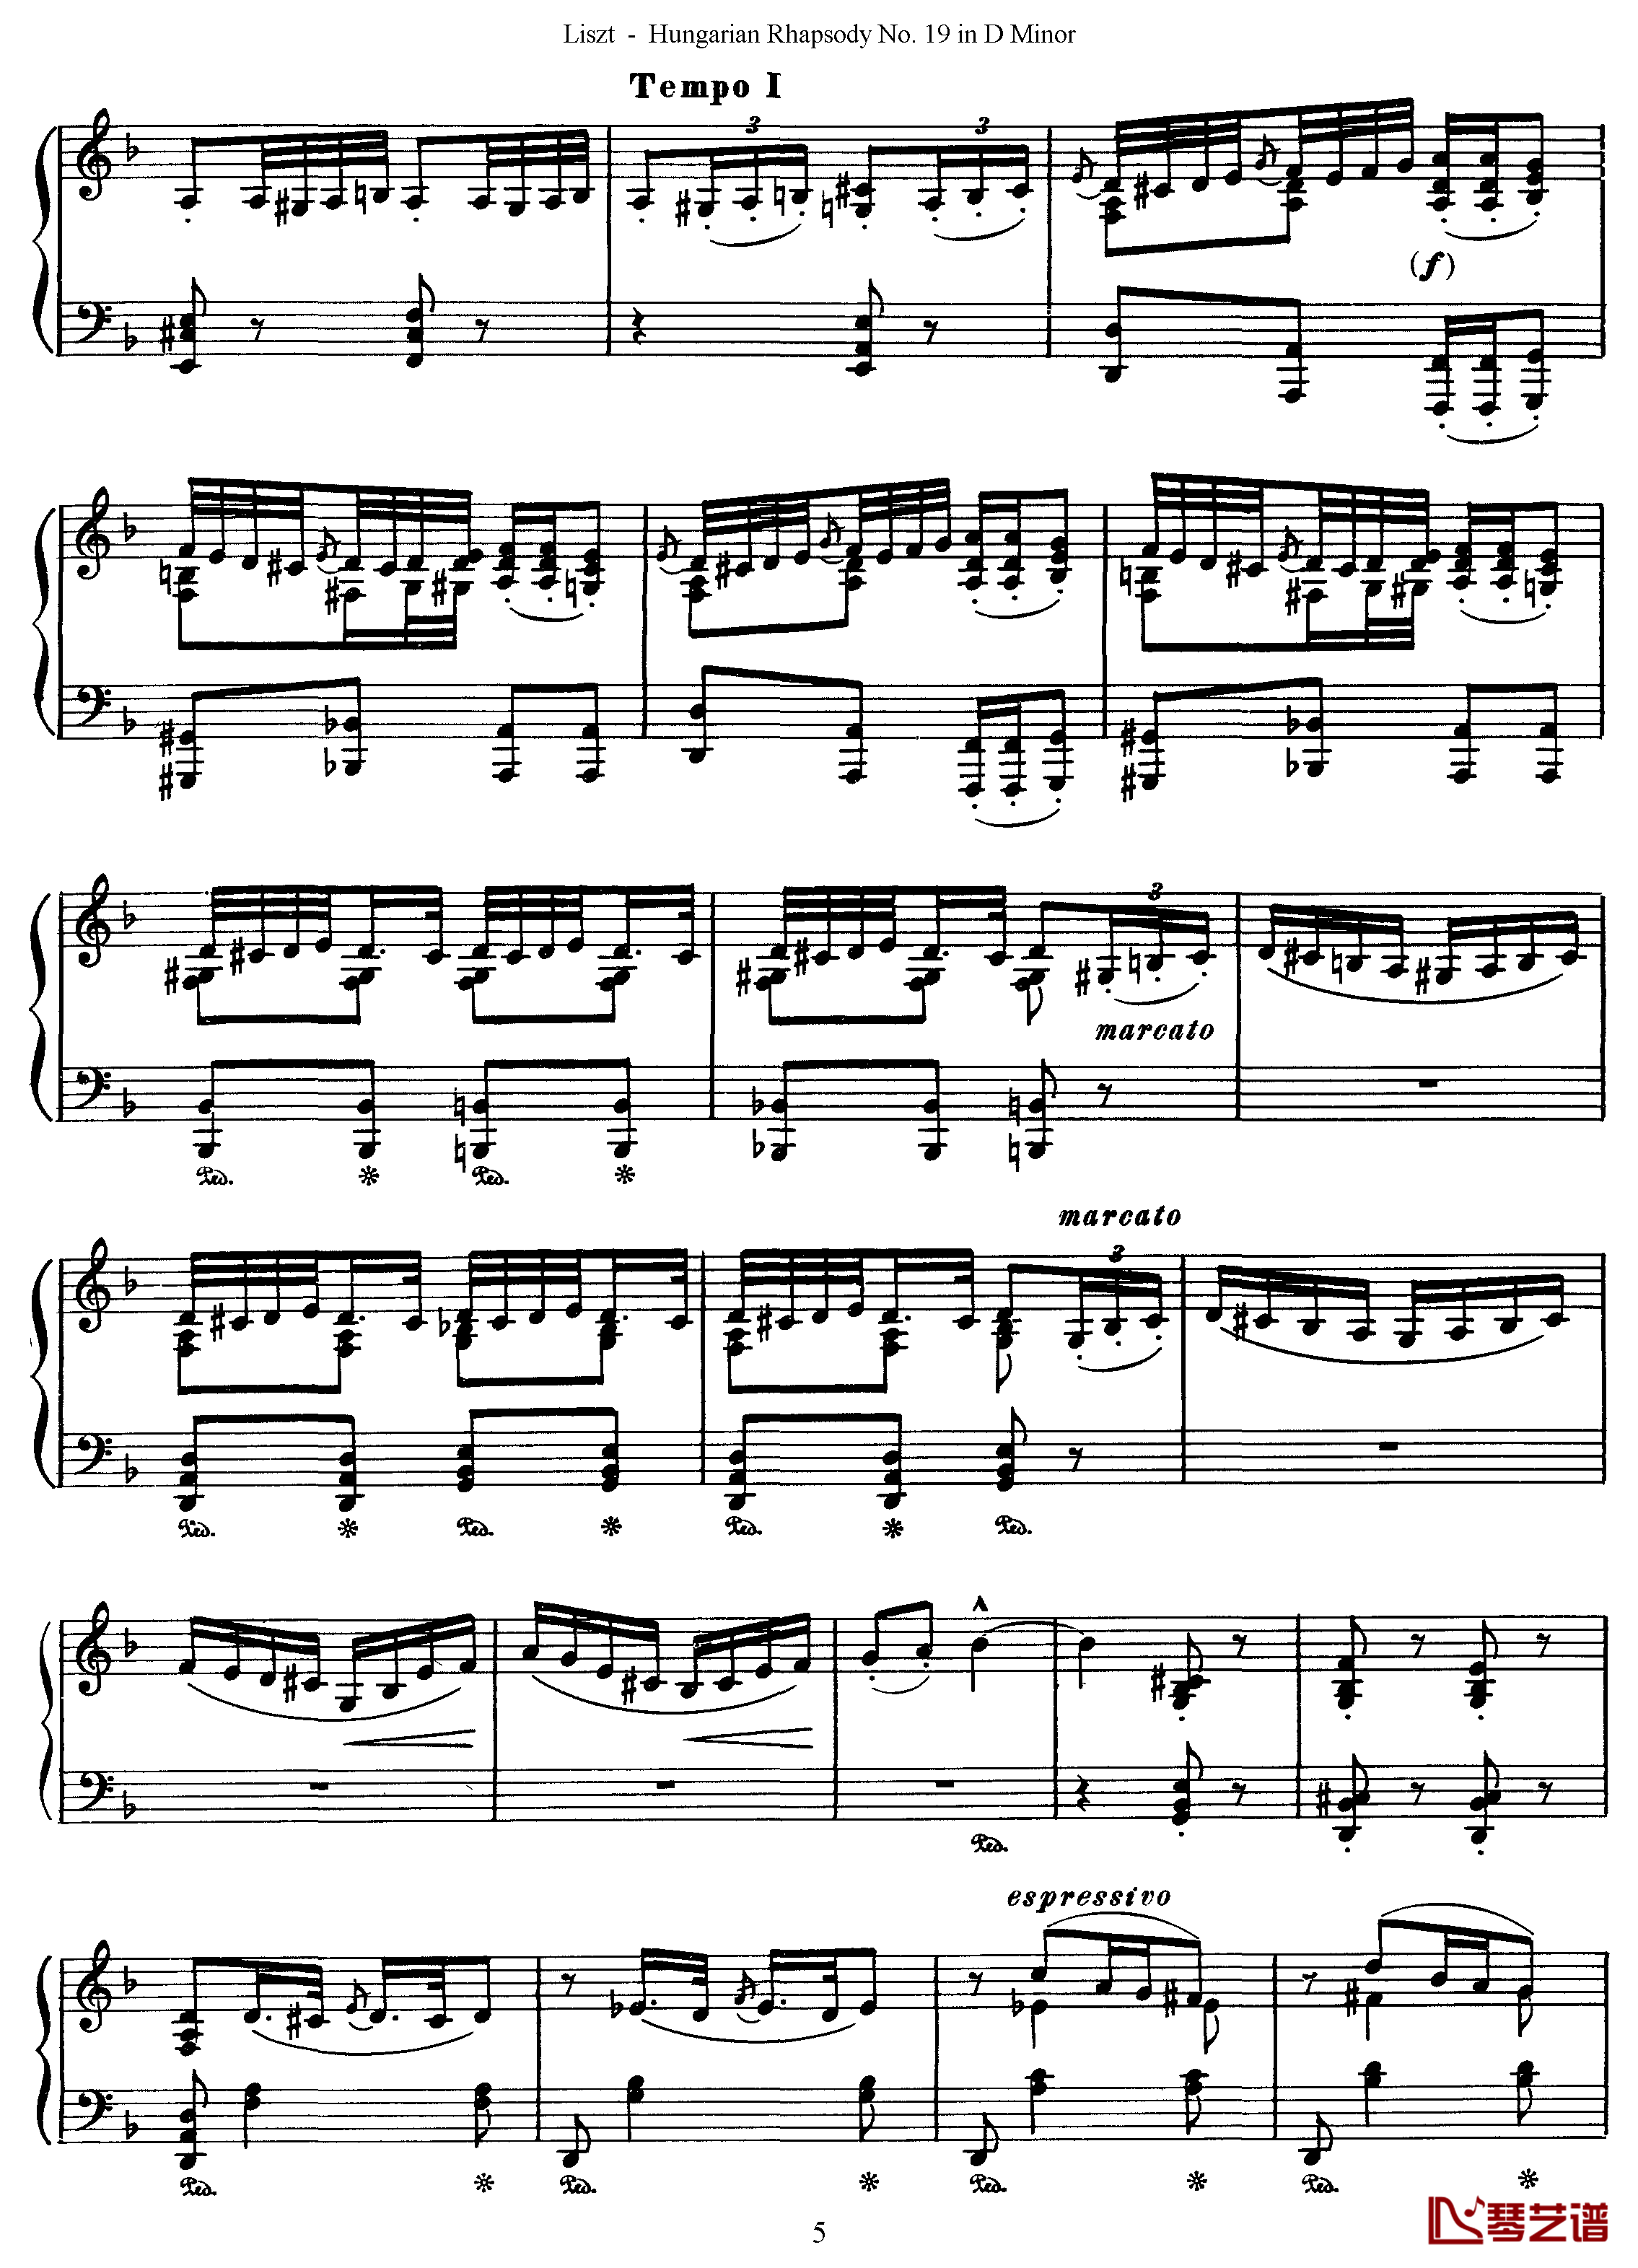 匈牙利狂想曲第19号钢琴谱-最后的狂想-李斯特